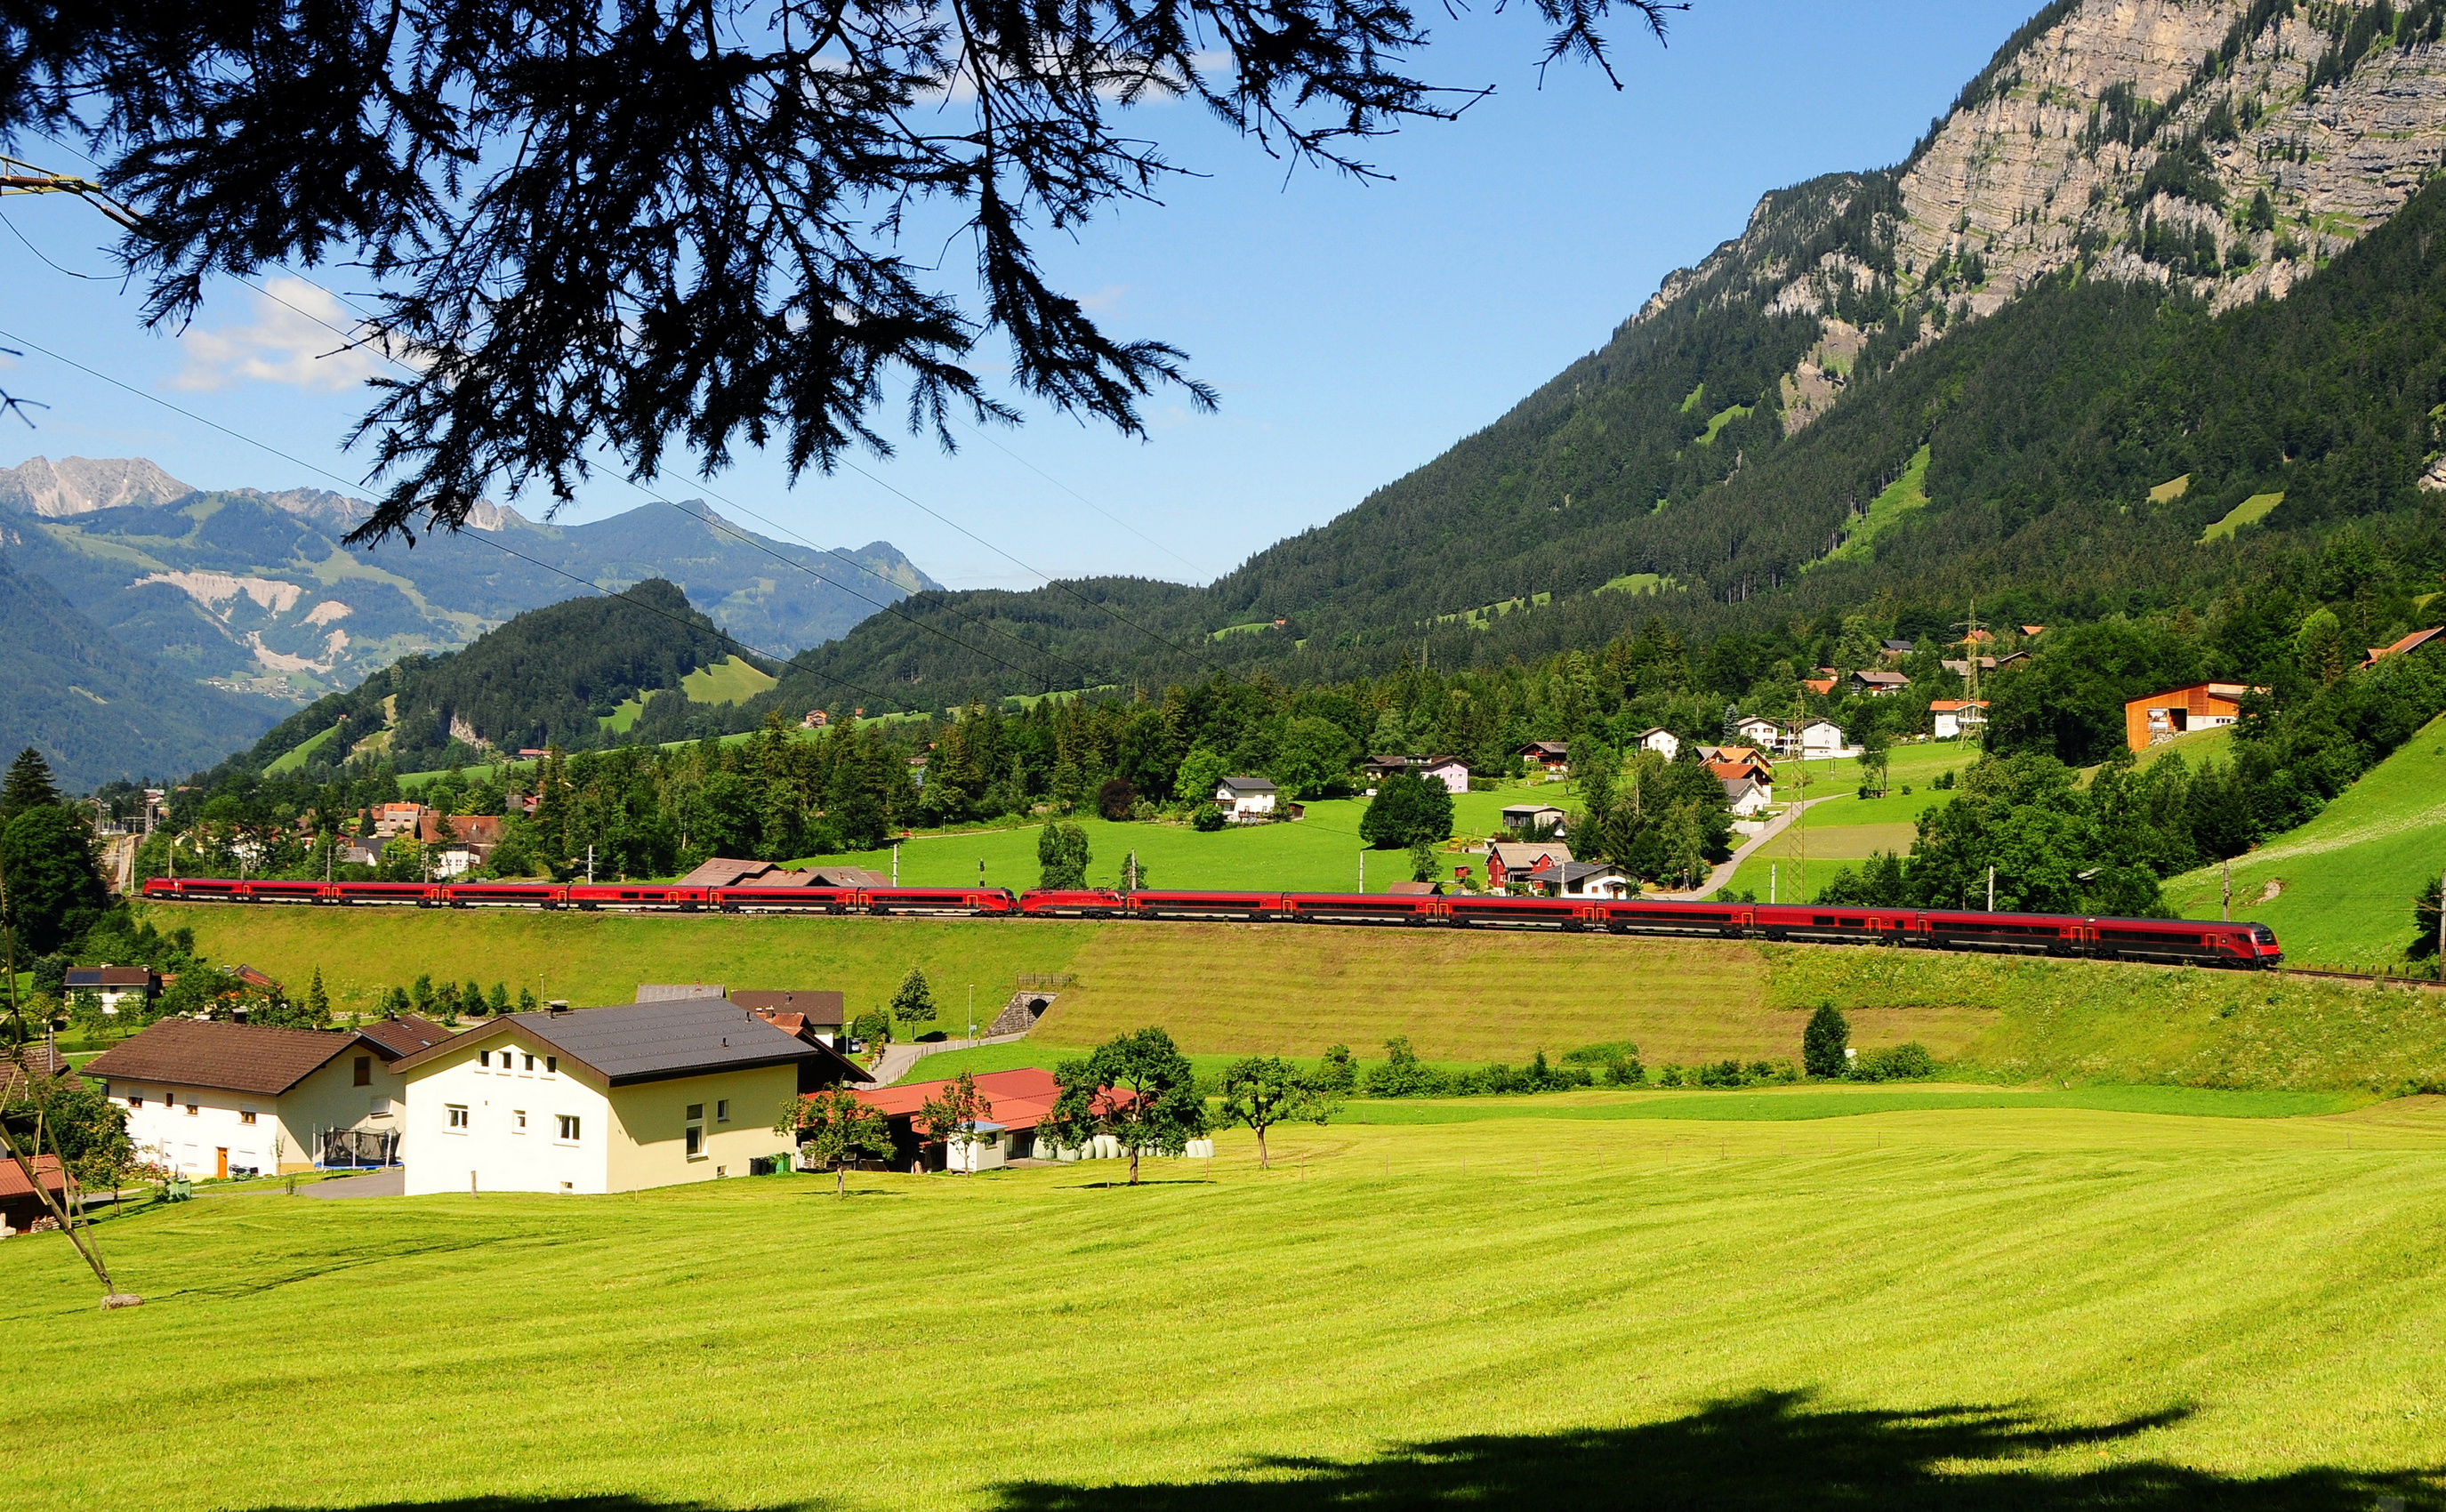 austria, nature, trees, grass, mountains 32K